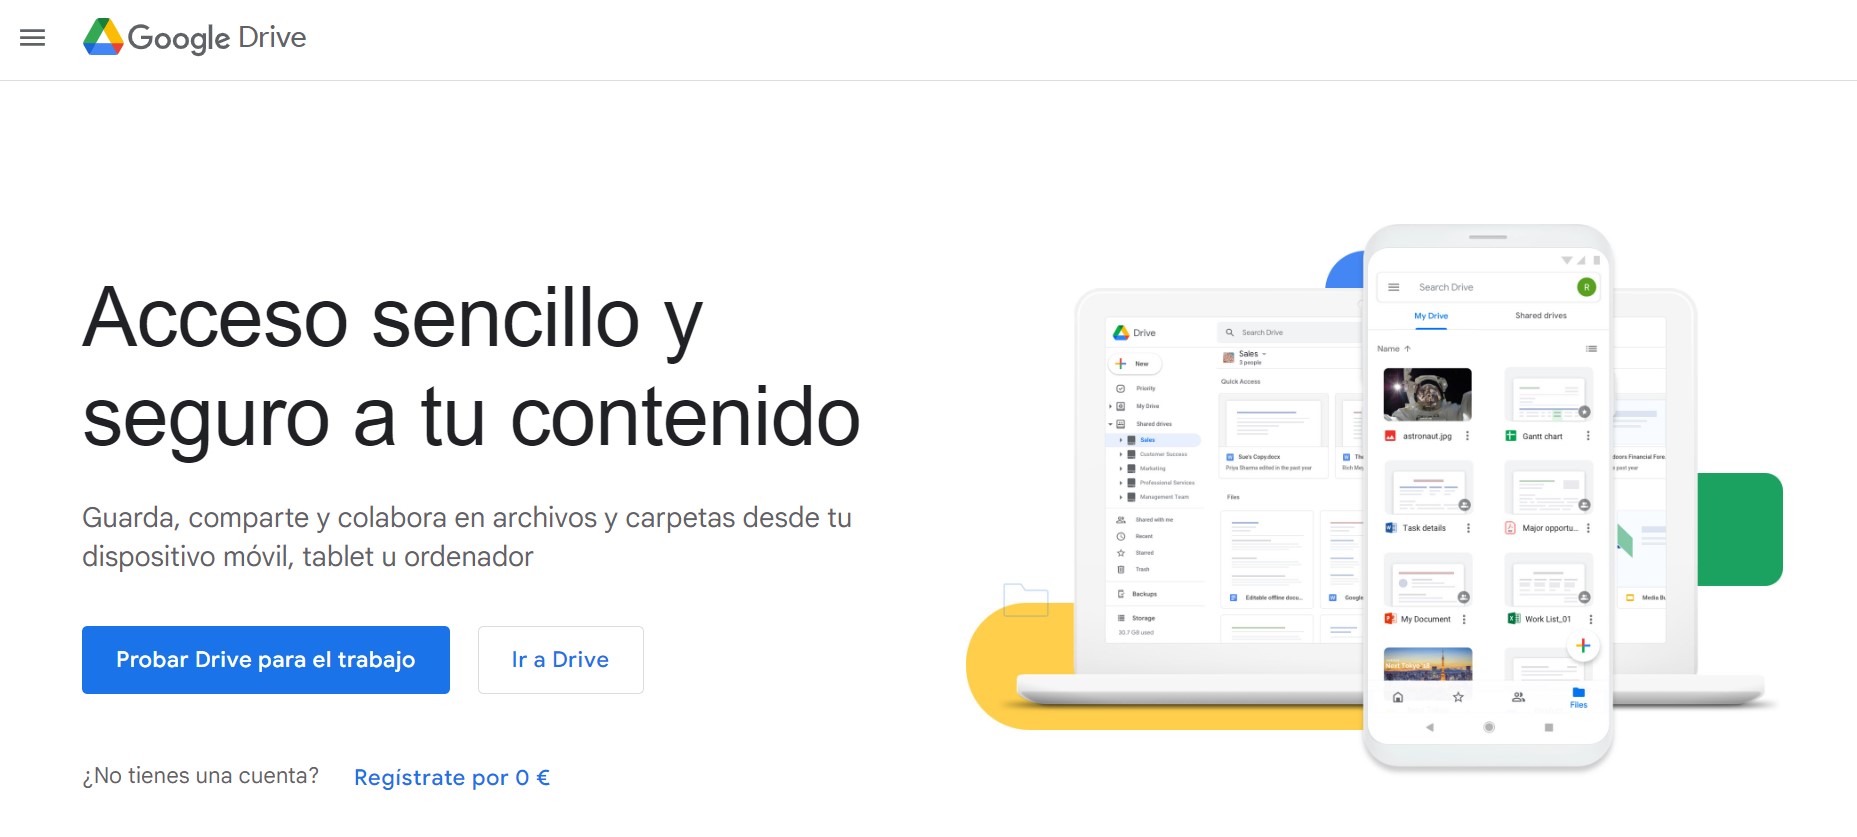 Google Drive Acceso